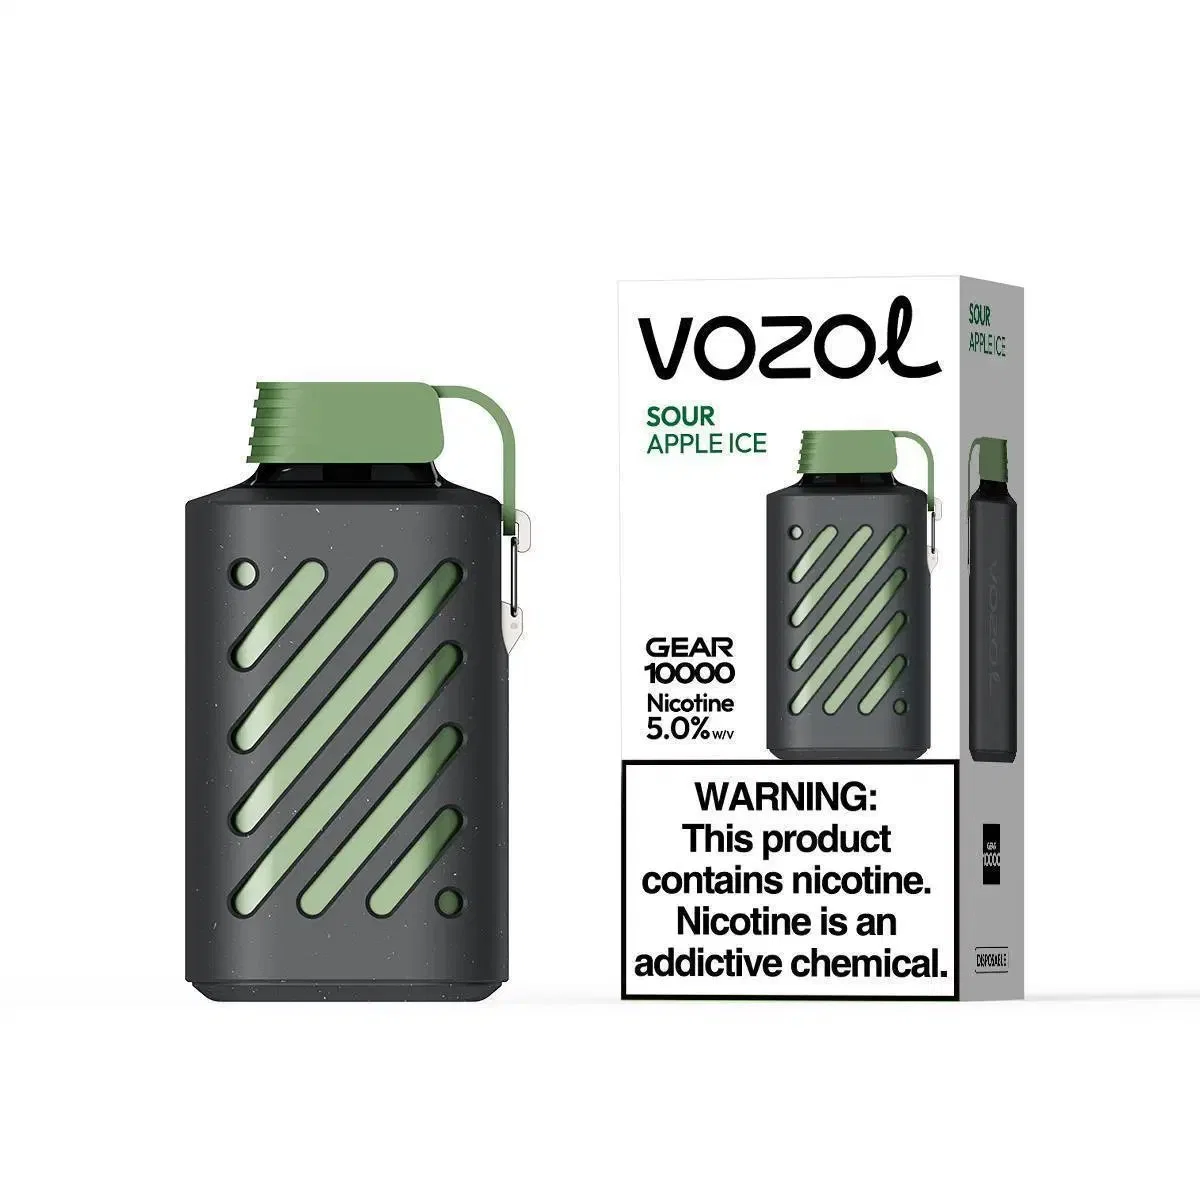 Шестерня Vozol 10000 отшелушивающей подушечкой большого облако курения одноразовые Vape оптовой E-сигареты оптовая торговля устройство подъемом 10000puffs пустой E-Cig Pod испаритель Vape